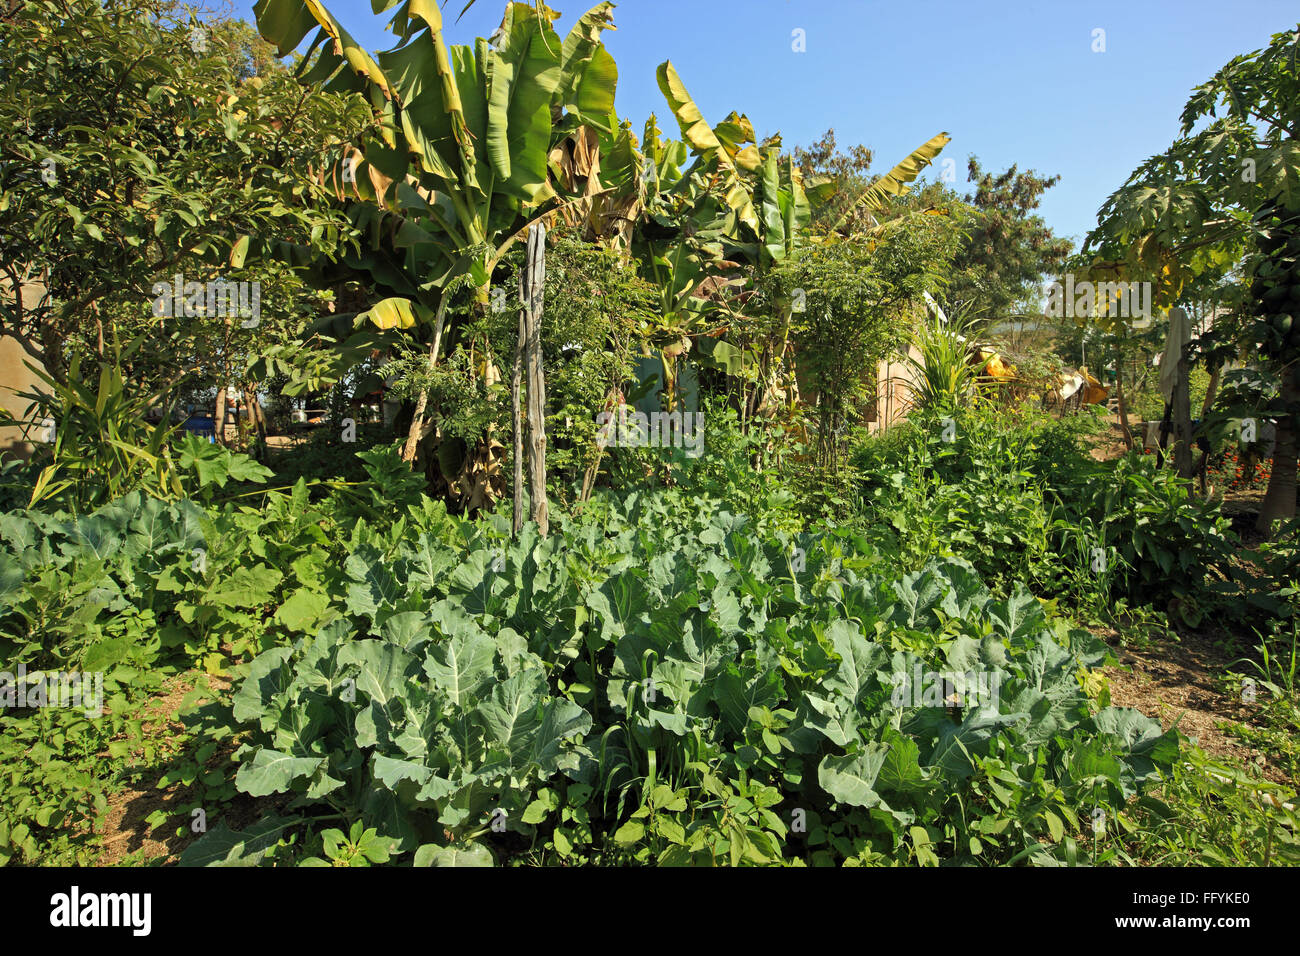 Organic farming of vegetables and fruits at Nemawar Madhya Pradesh India Stock Photo